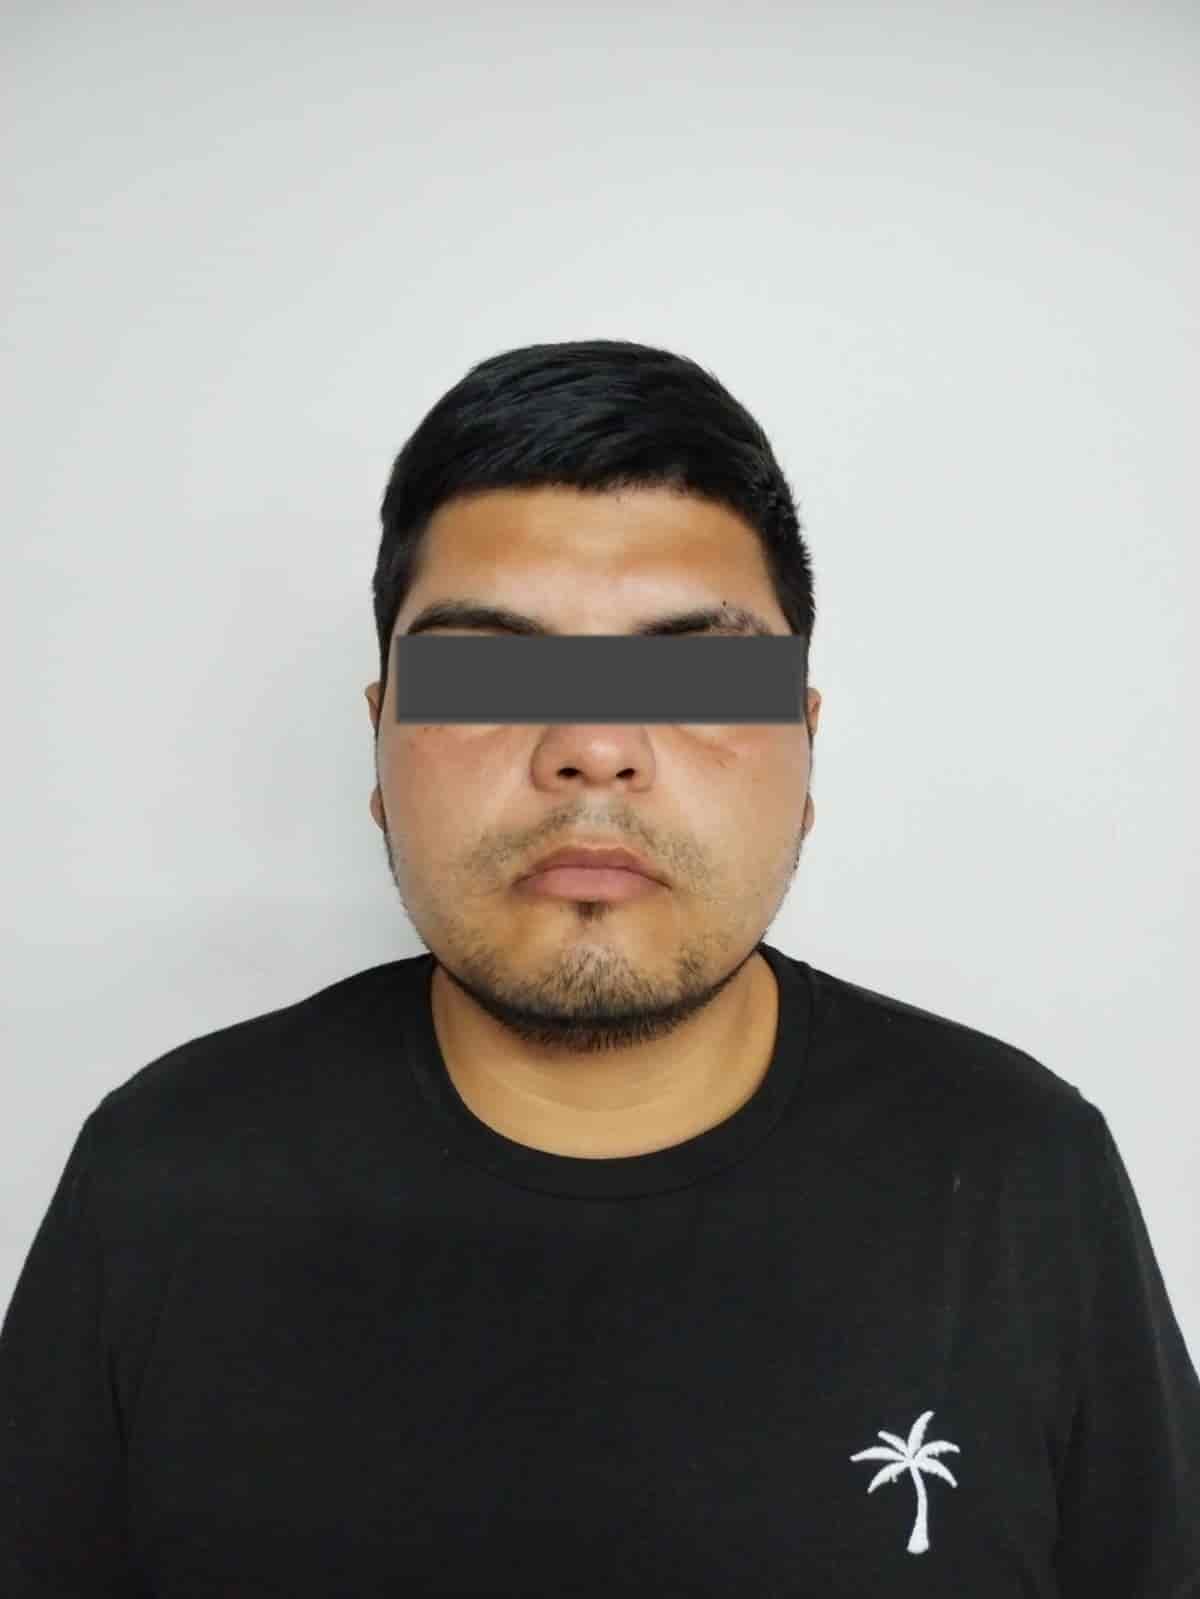 Uno de los involucrados en la ejecución de dos personas, hace un año en García, fue arrestado por elementos de la Agencia Estatal de Investigaciones e internando en el Penal de Apodaca.